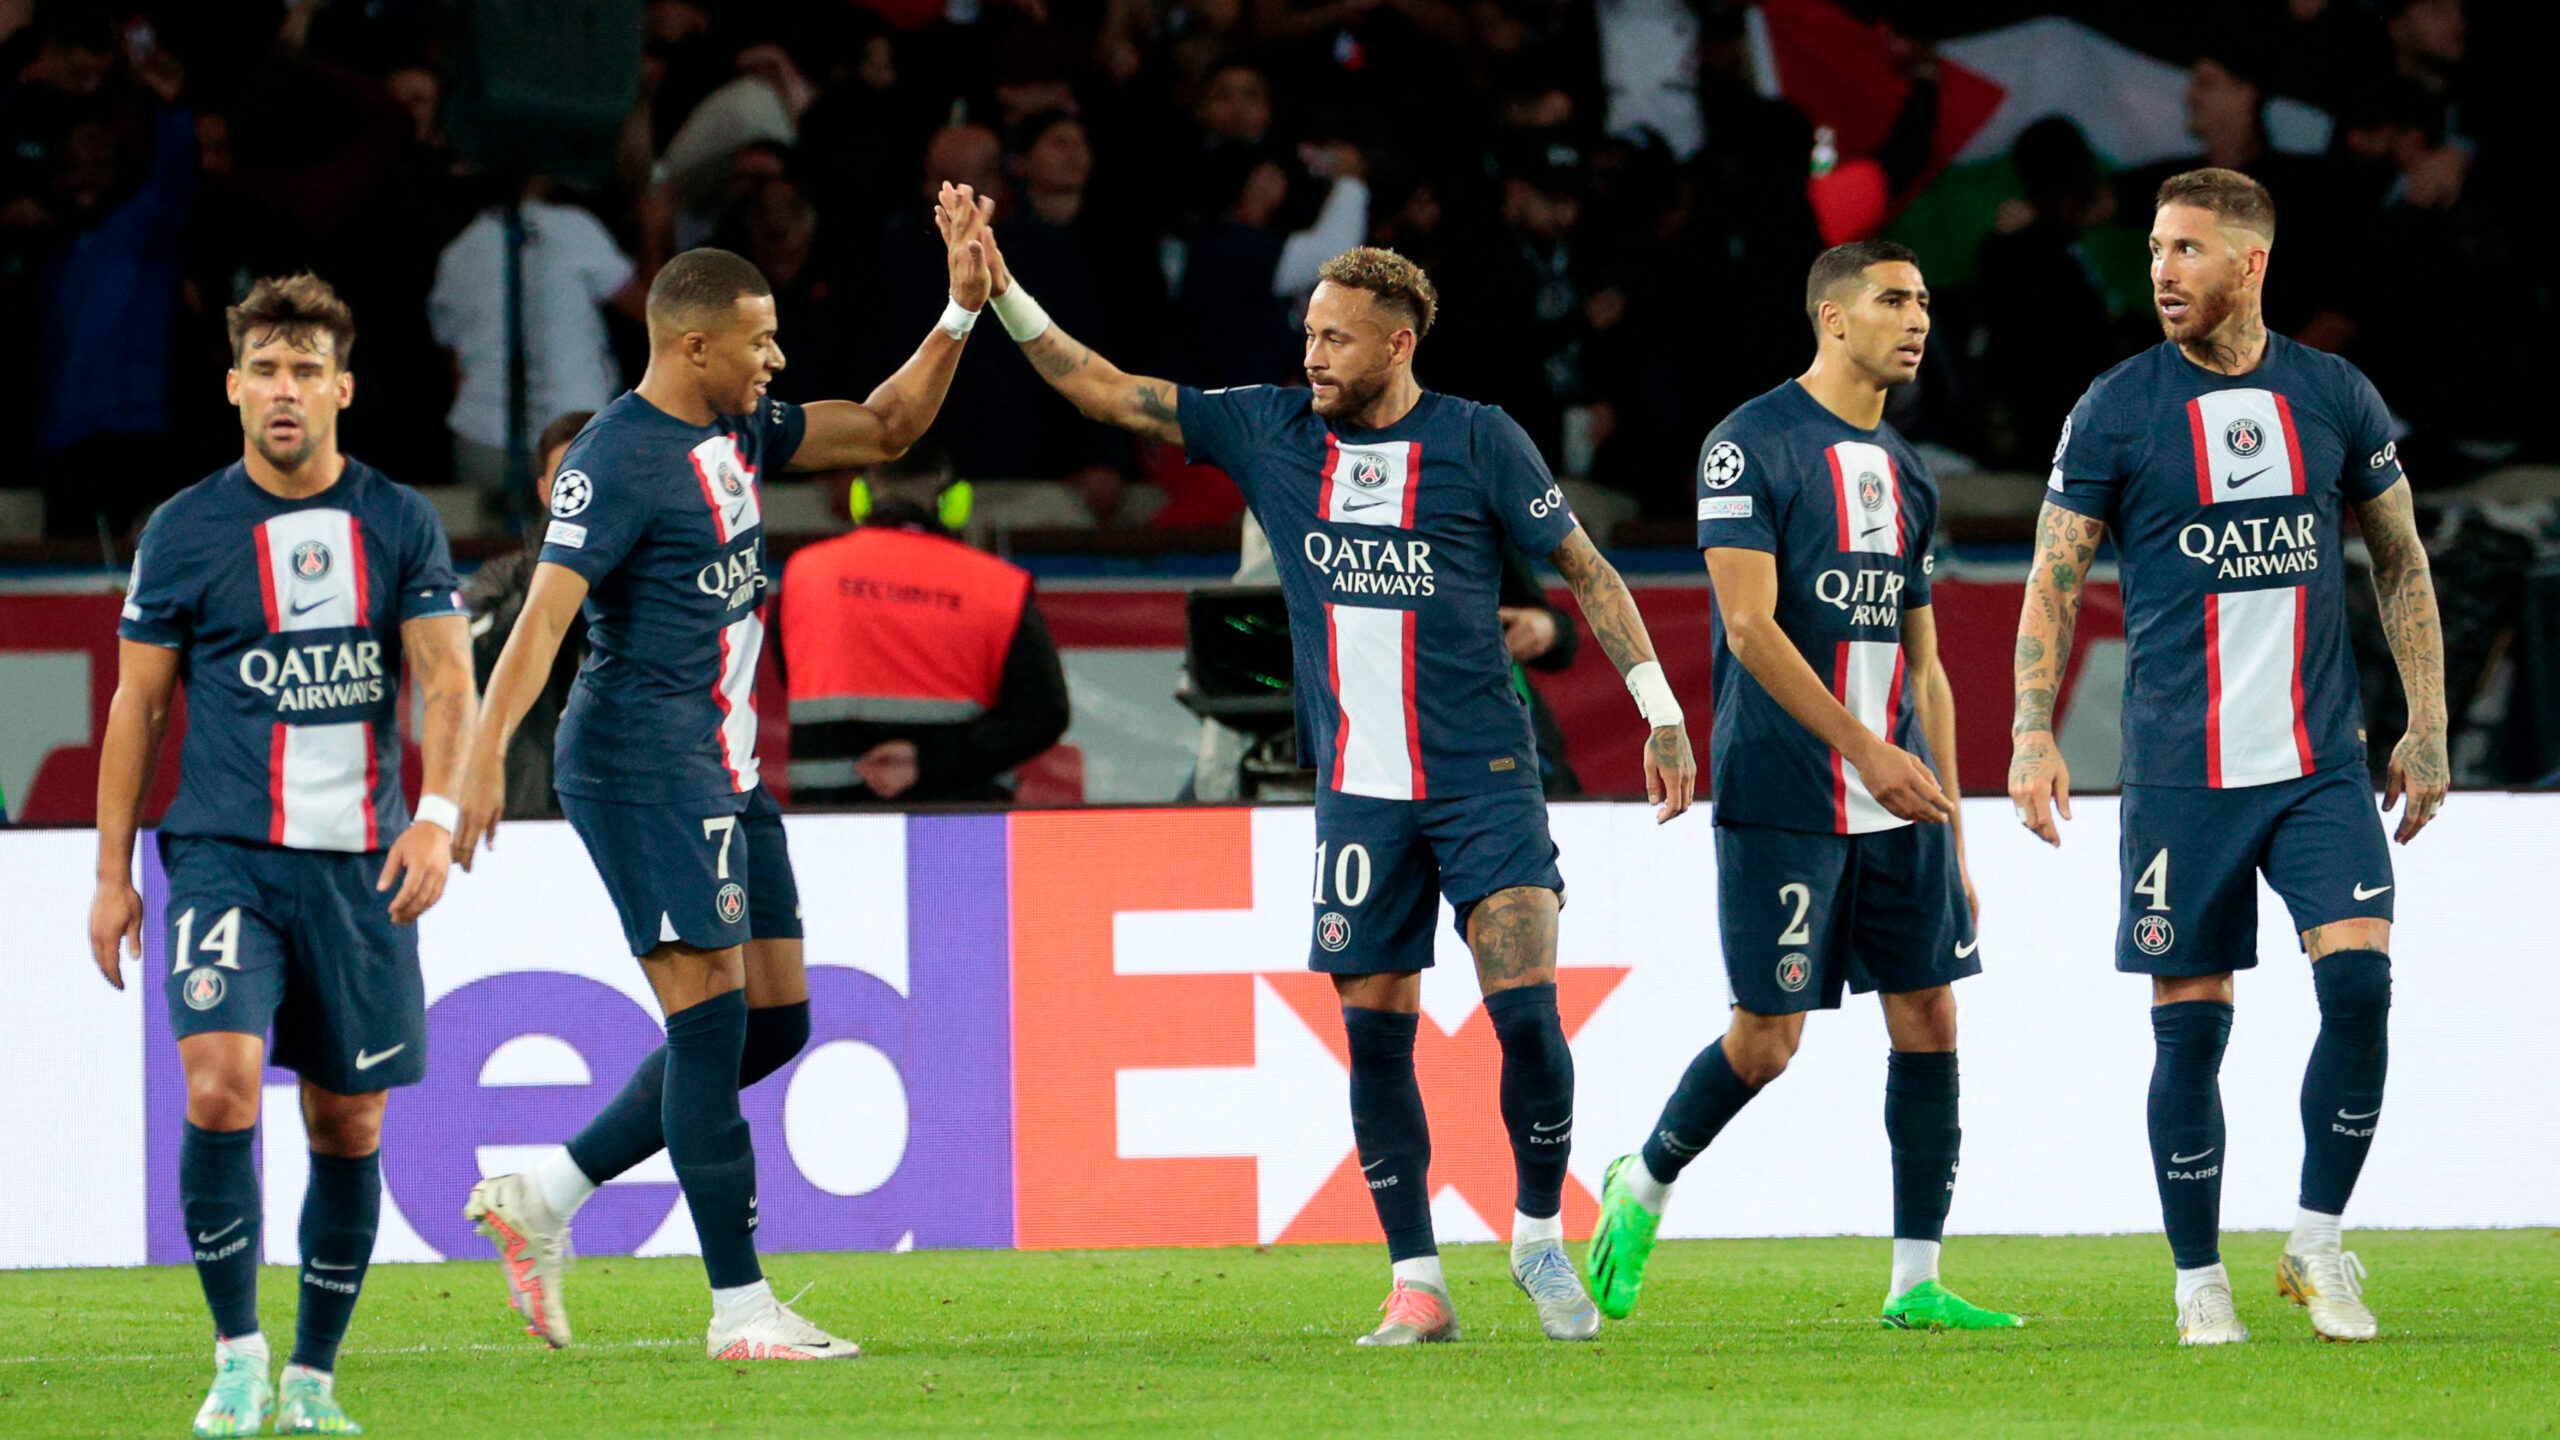 Mauvaise nouvelle pour le PSG, l’UEFA ouvre une nouvelle procédure disciplinaire contre le club francilien